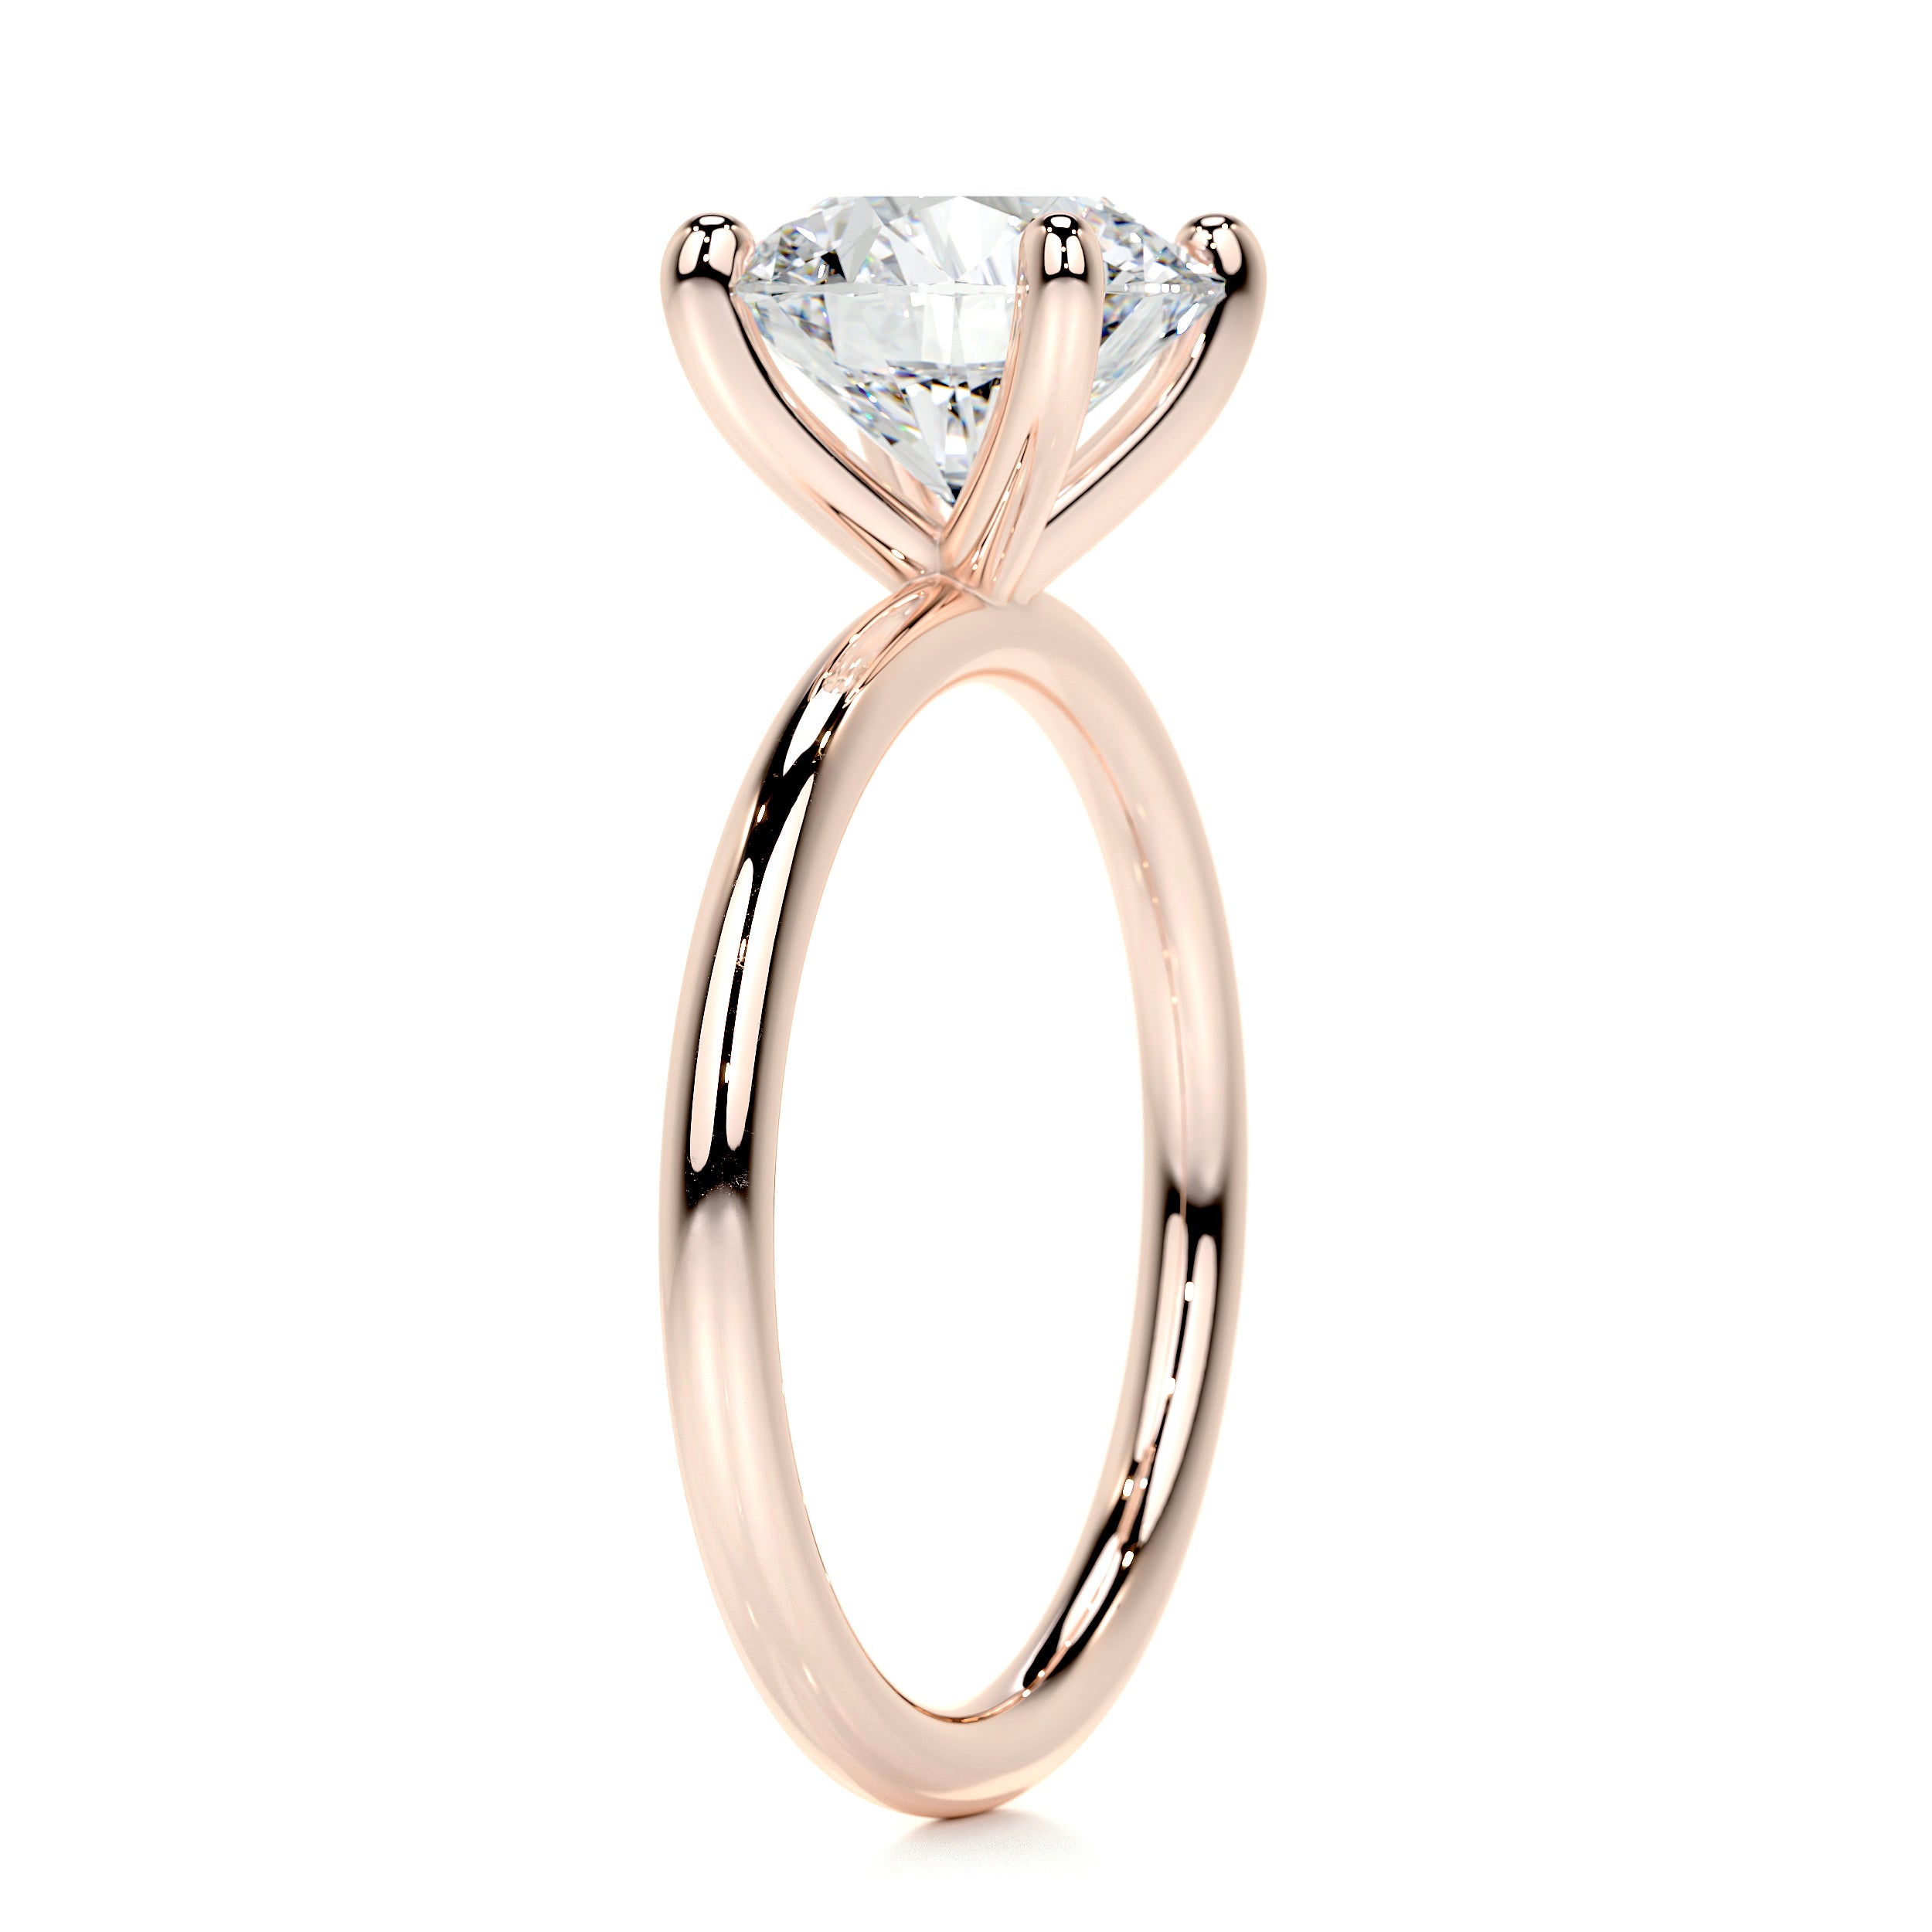 Eloise Diamond Engagement Ring -14K Rose Gold